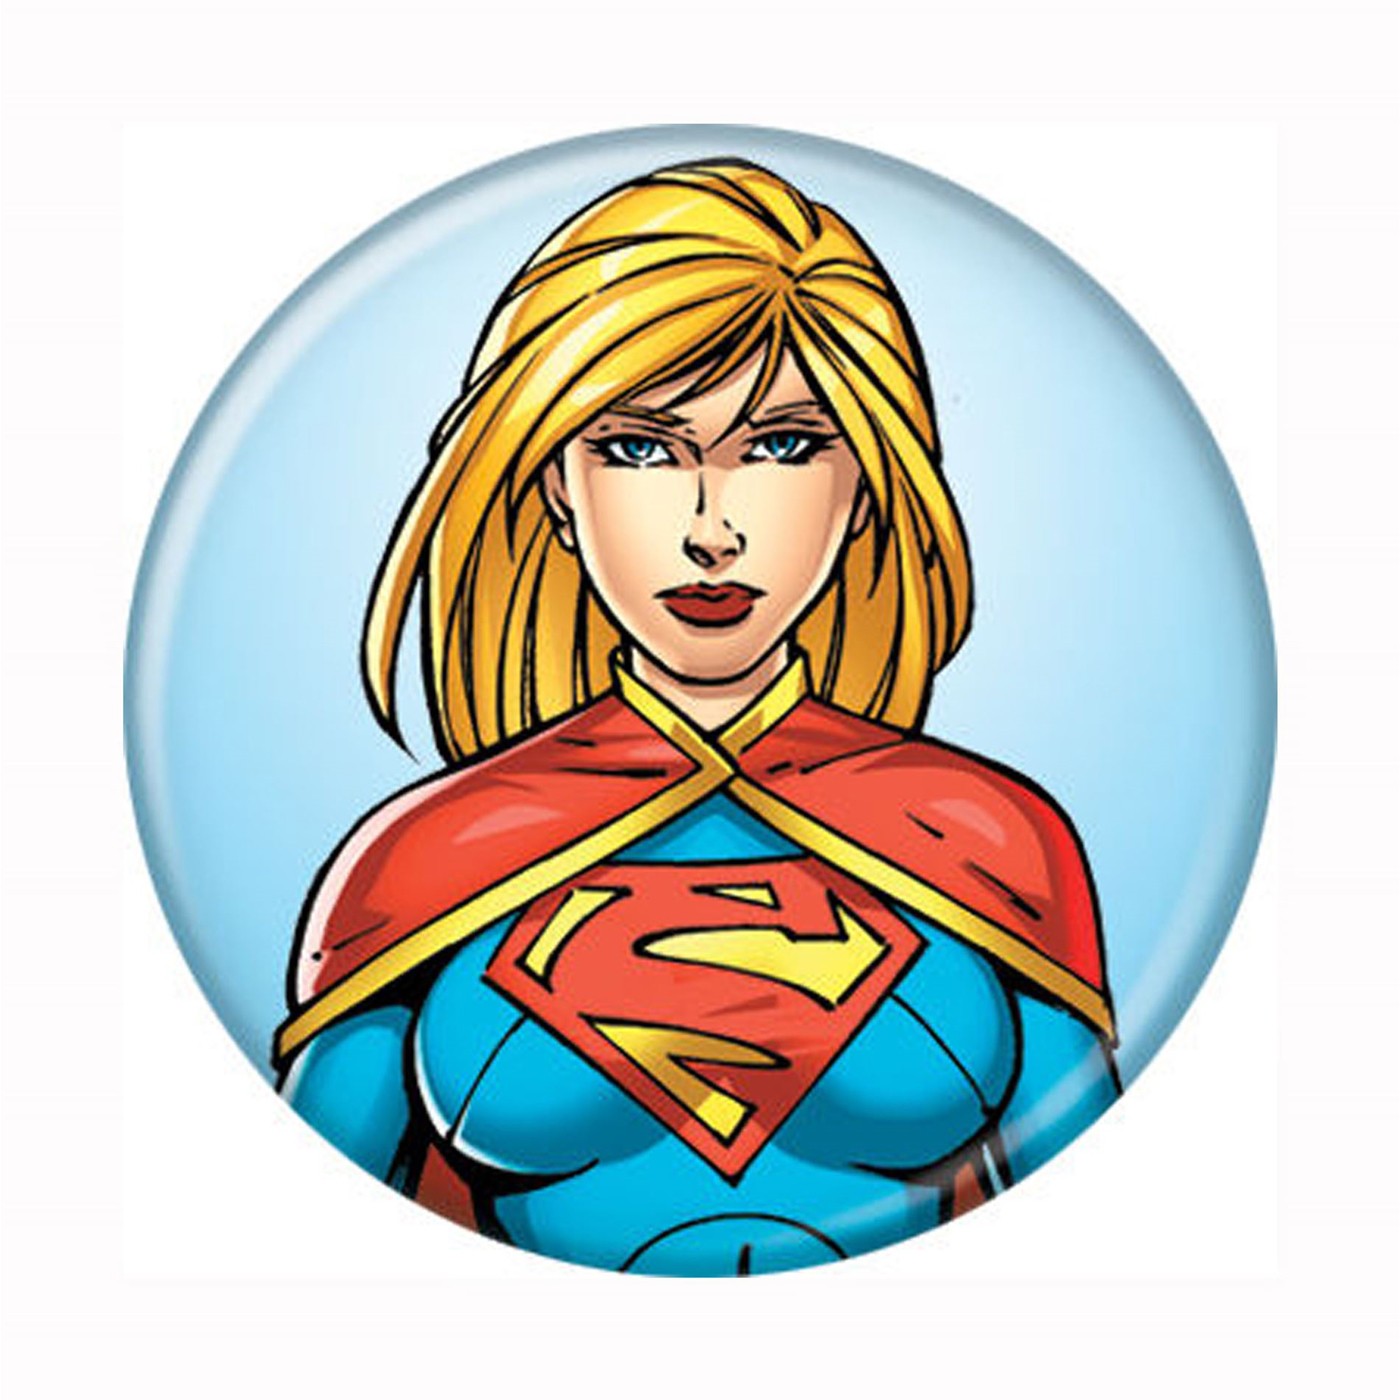 Supergirl Headshot New 52 Button